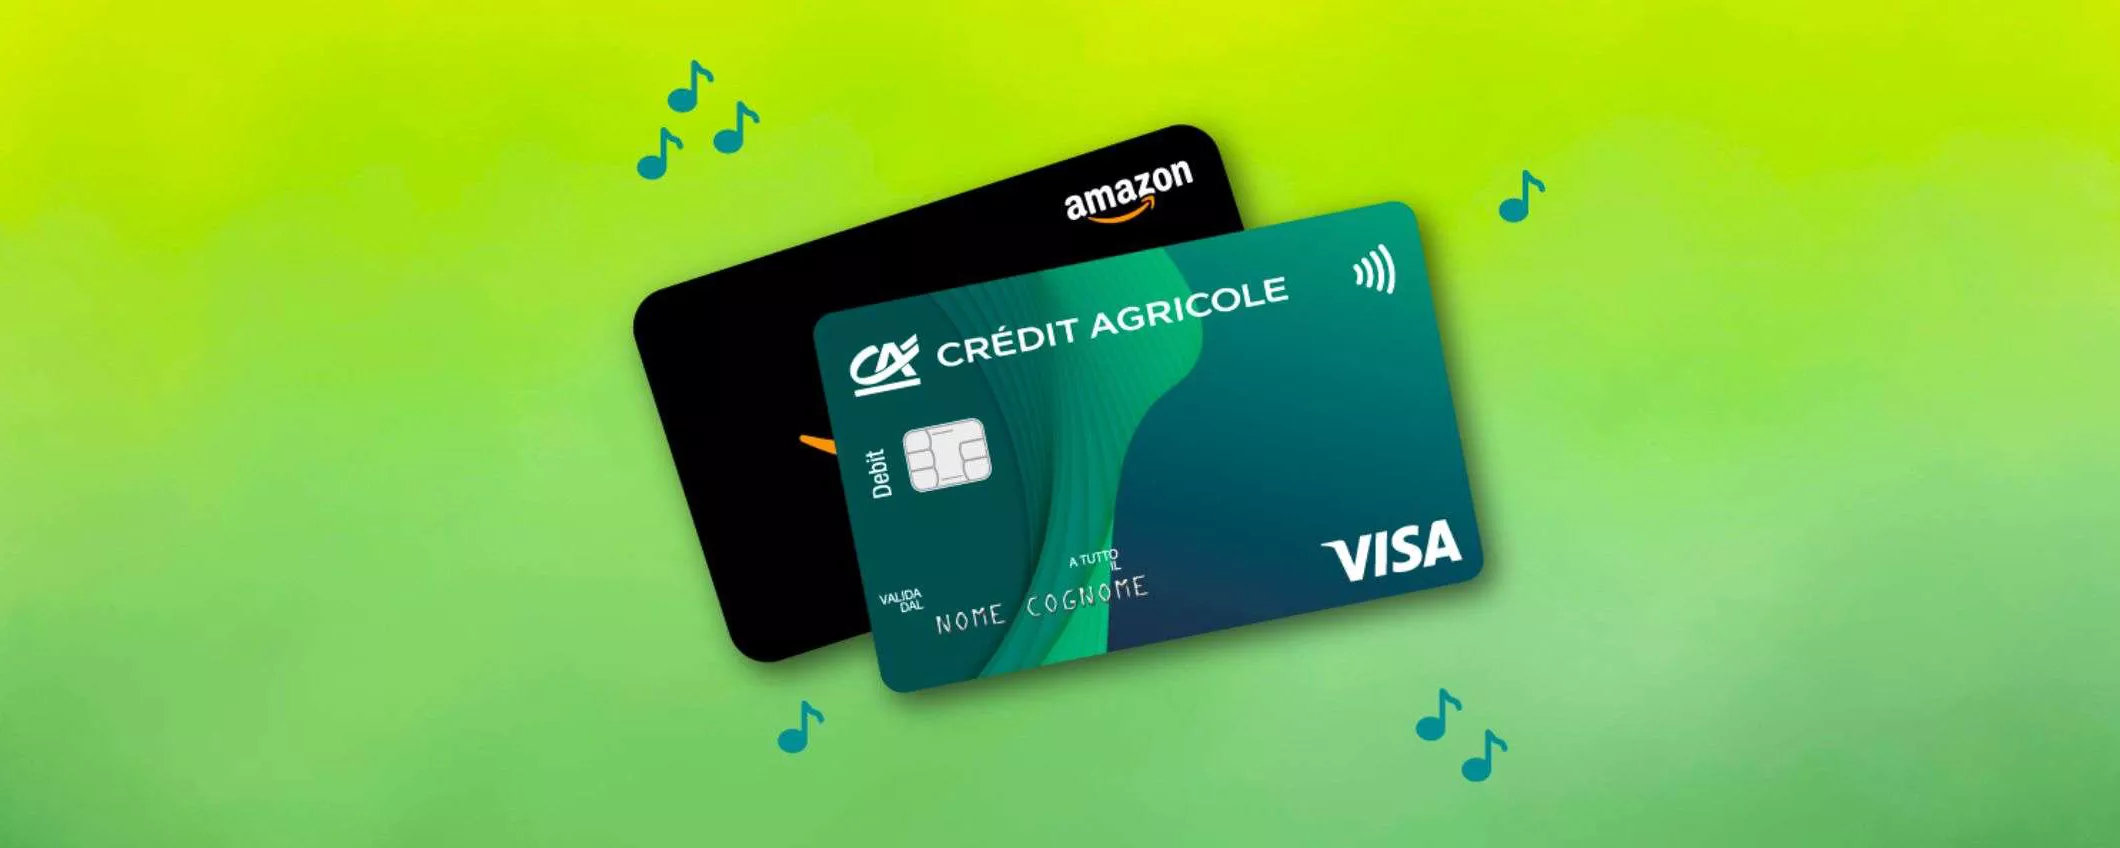 Crédit Agricole: apri il conto online e ricevi fino a 150 euro di buoni Amazon